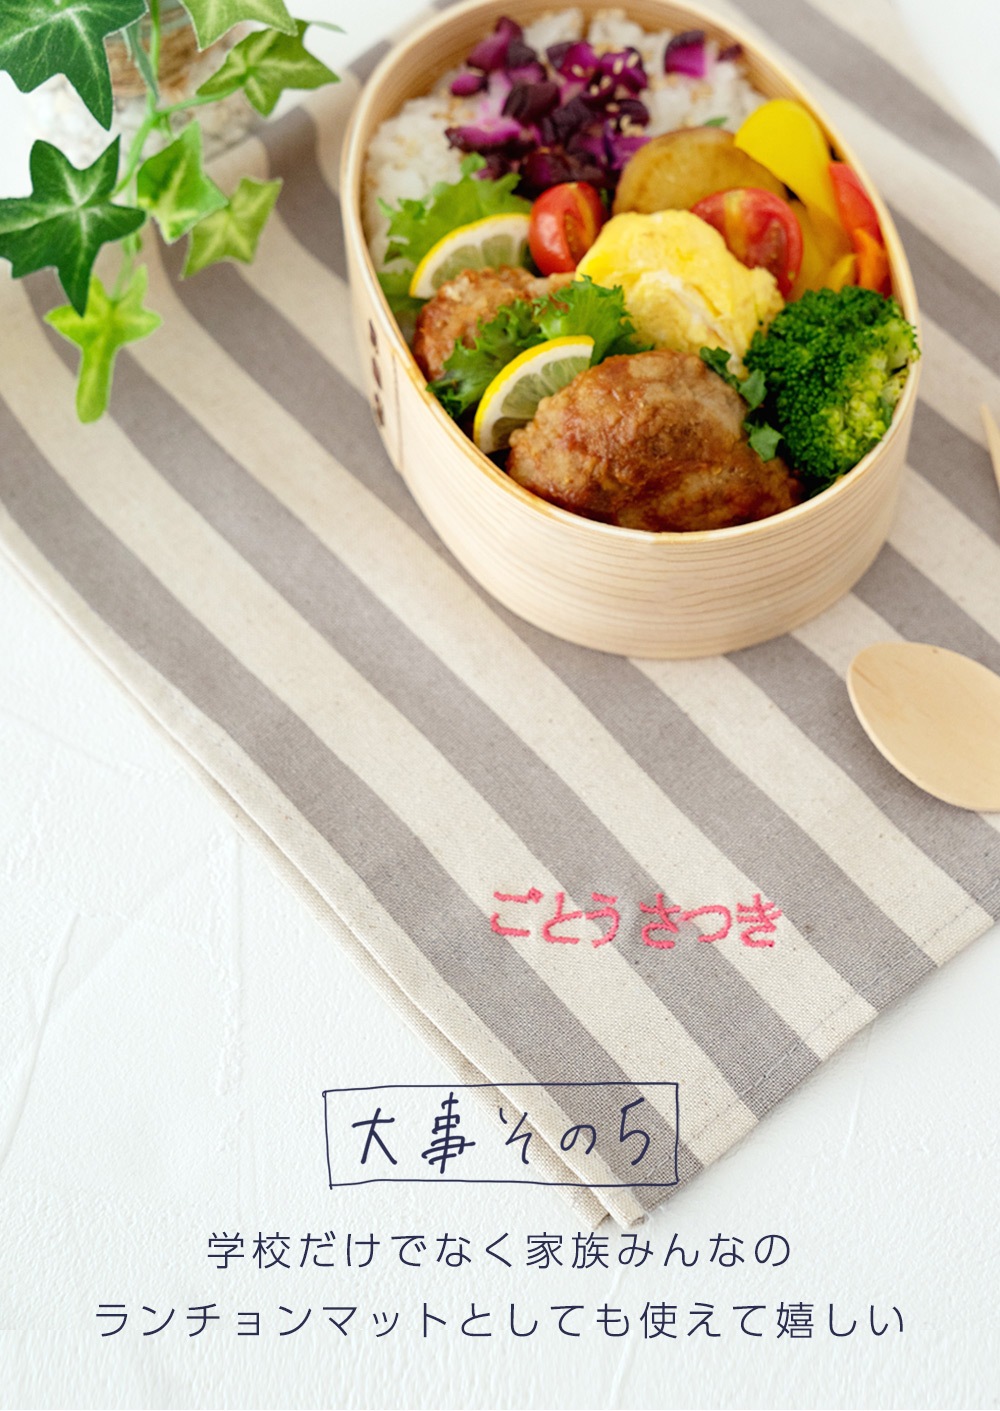 給食マット 給食ナフキン / Bタイプ32×47 ランチョンマット 卒園記念品 日本製 DORACO FIRST (ドラコファースト)  ブランド-DORACOFIRST